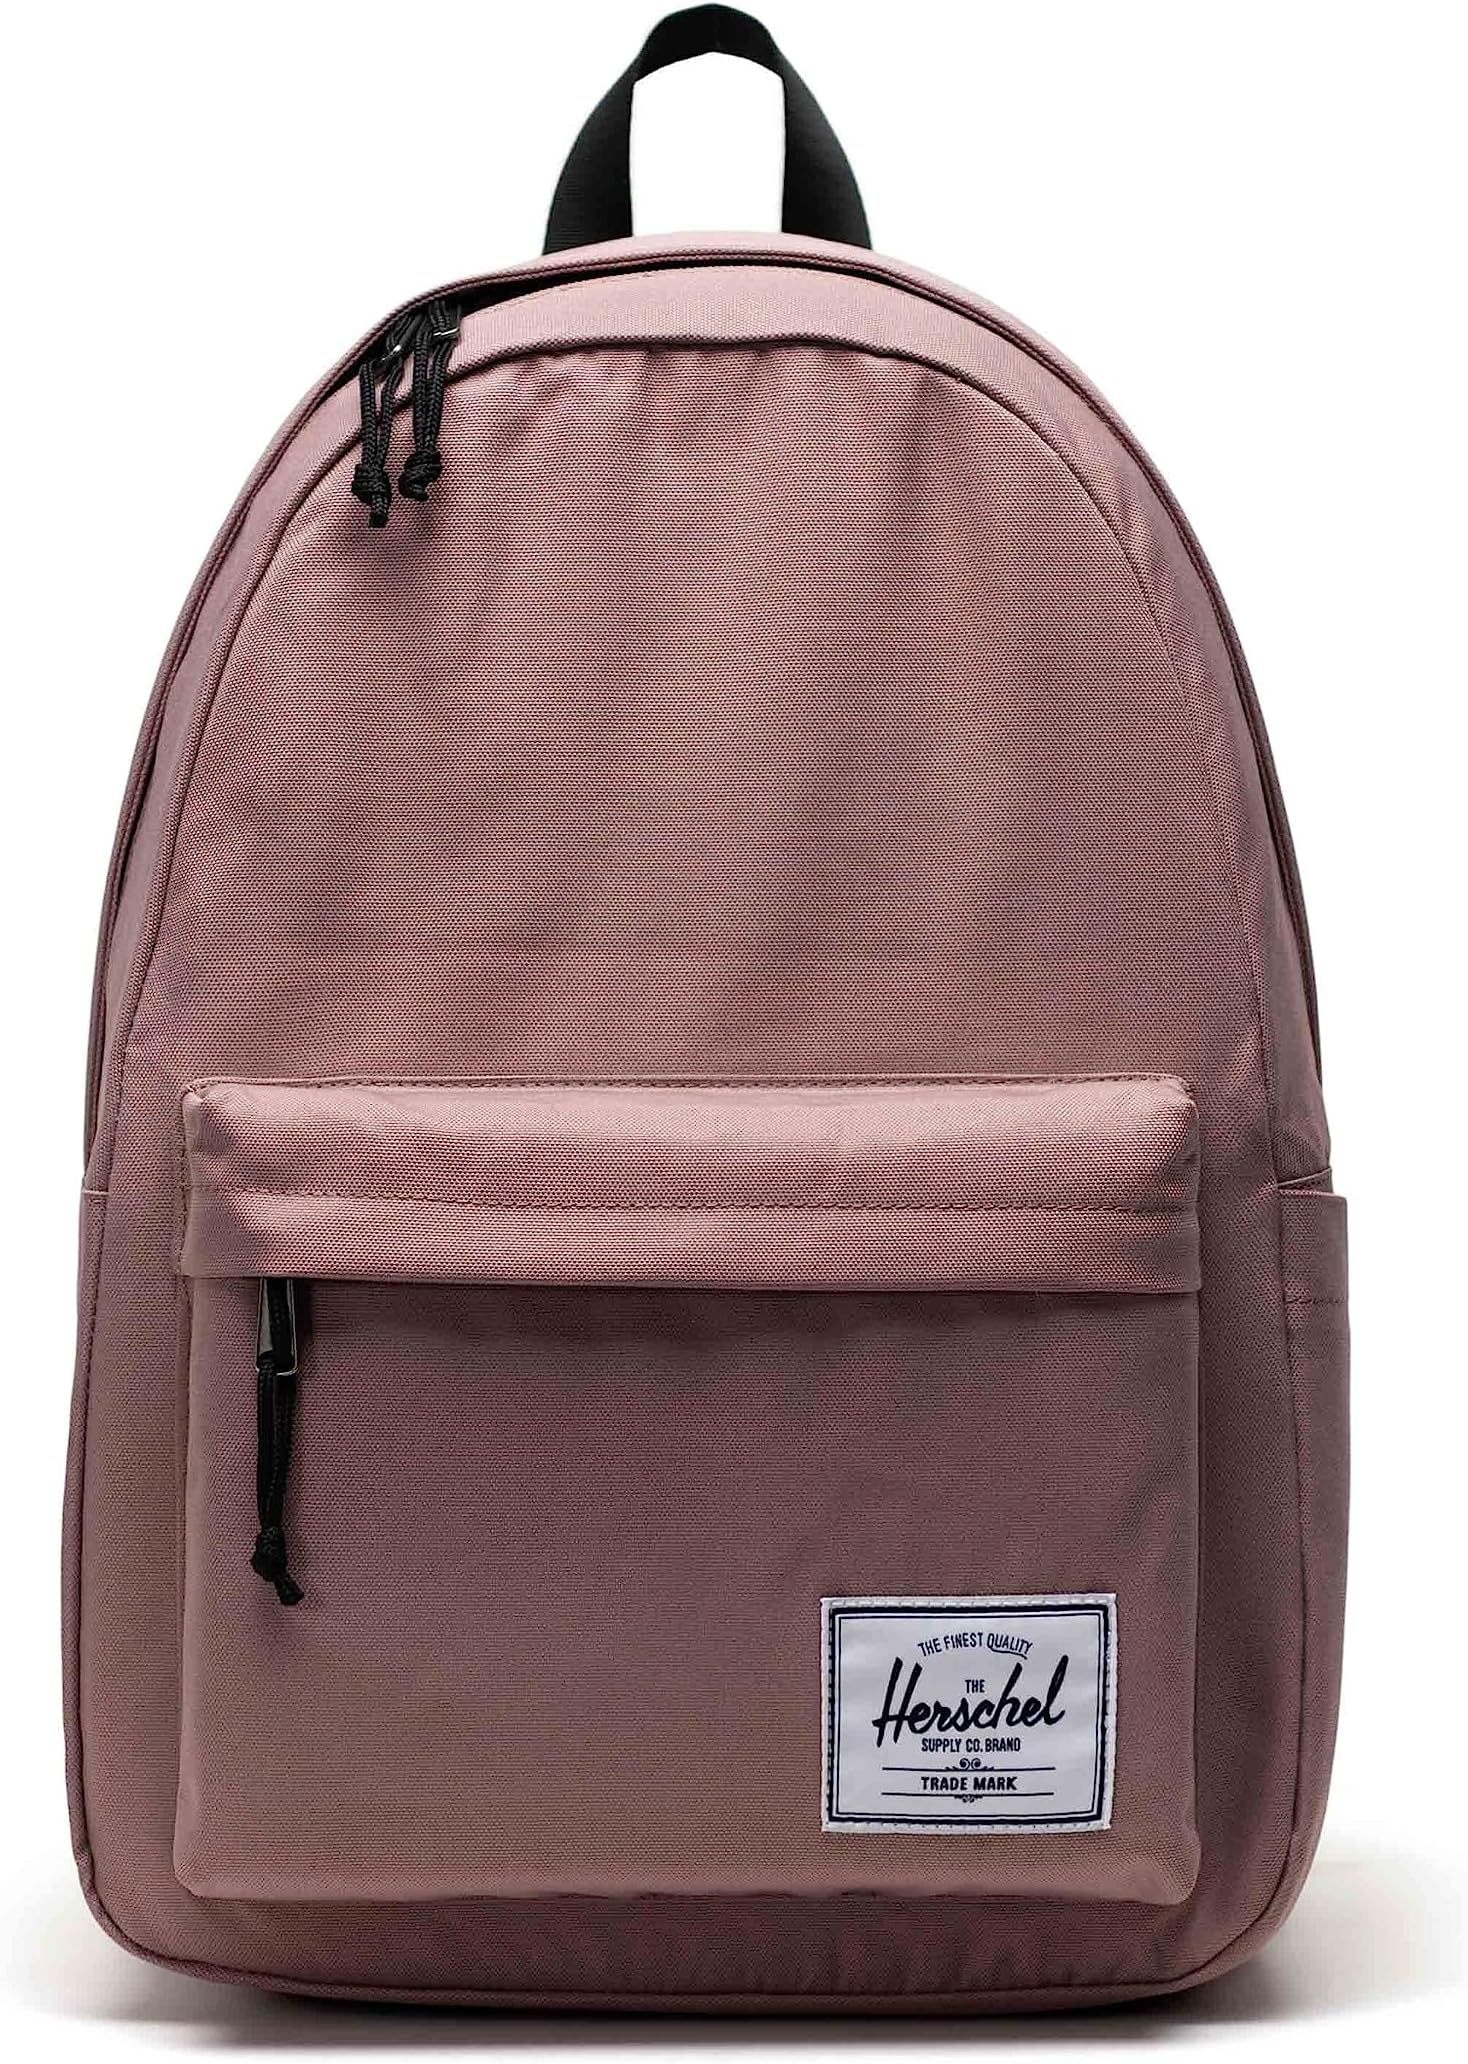 классический рюкзак herschel supply co xl цвет rose brown Рюкзак Classic XL Backpack Herschel Supply Co., цвет Ash Rose